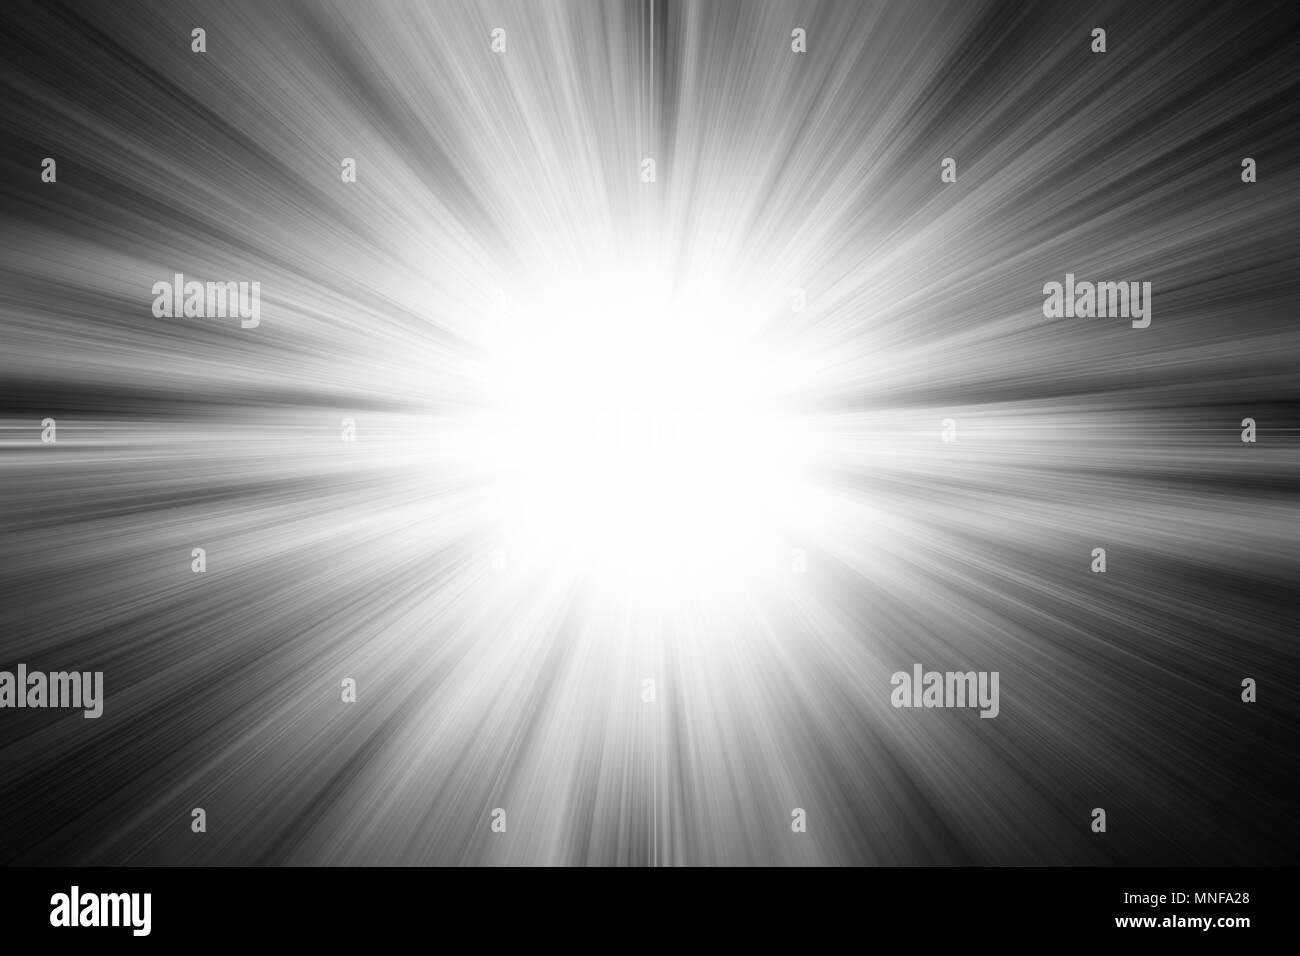 Light burst explosion in black and white illustration for background ...